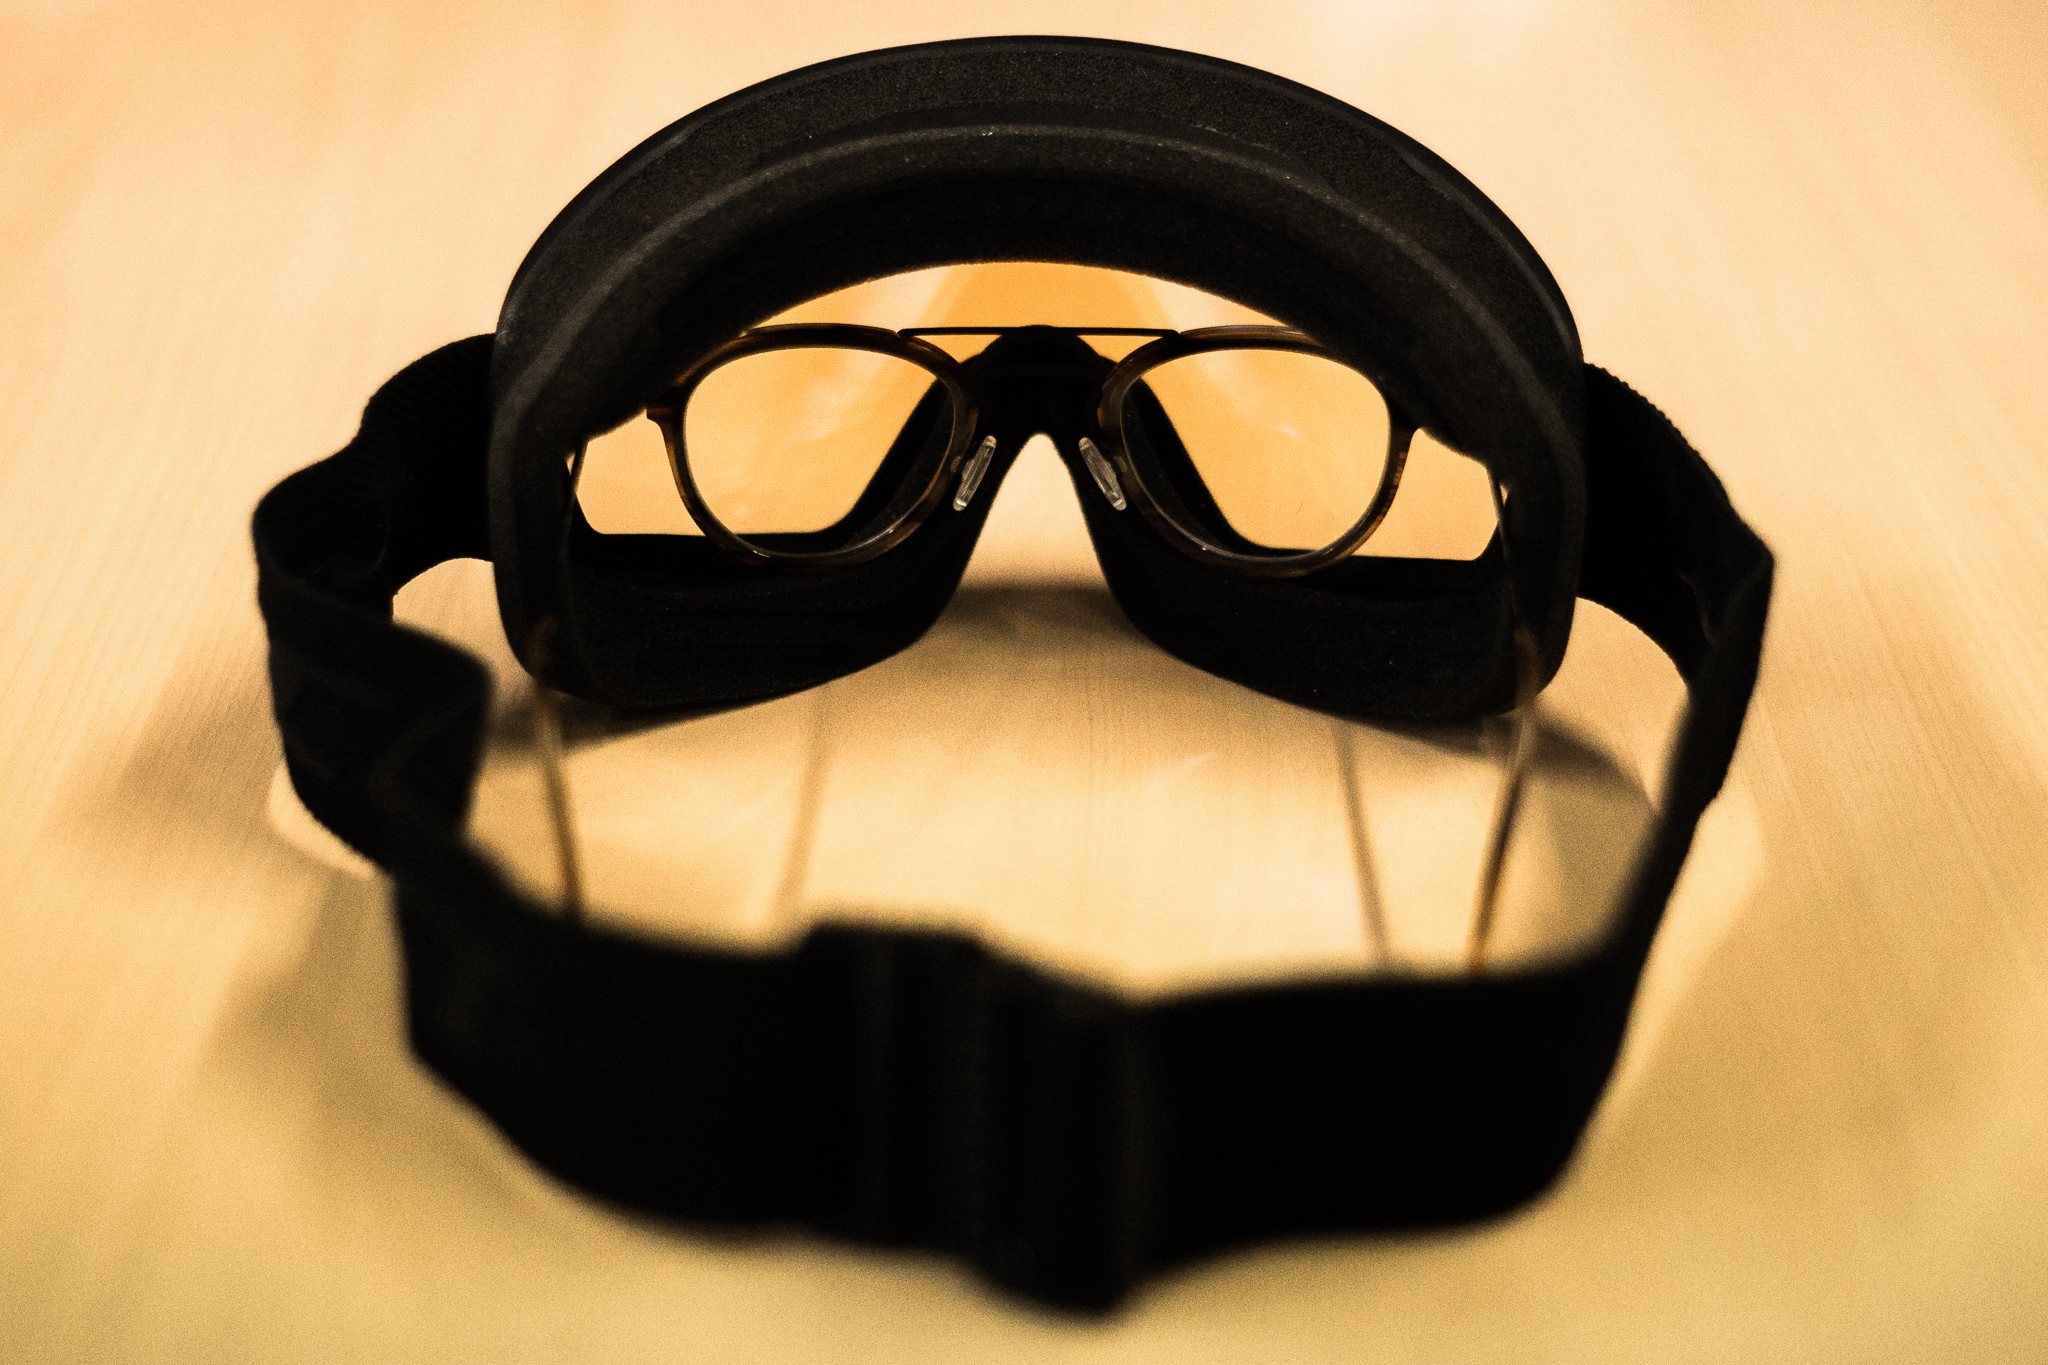 Découvrez les masques de ski pour porteurs de lunettes OTG